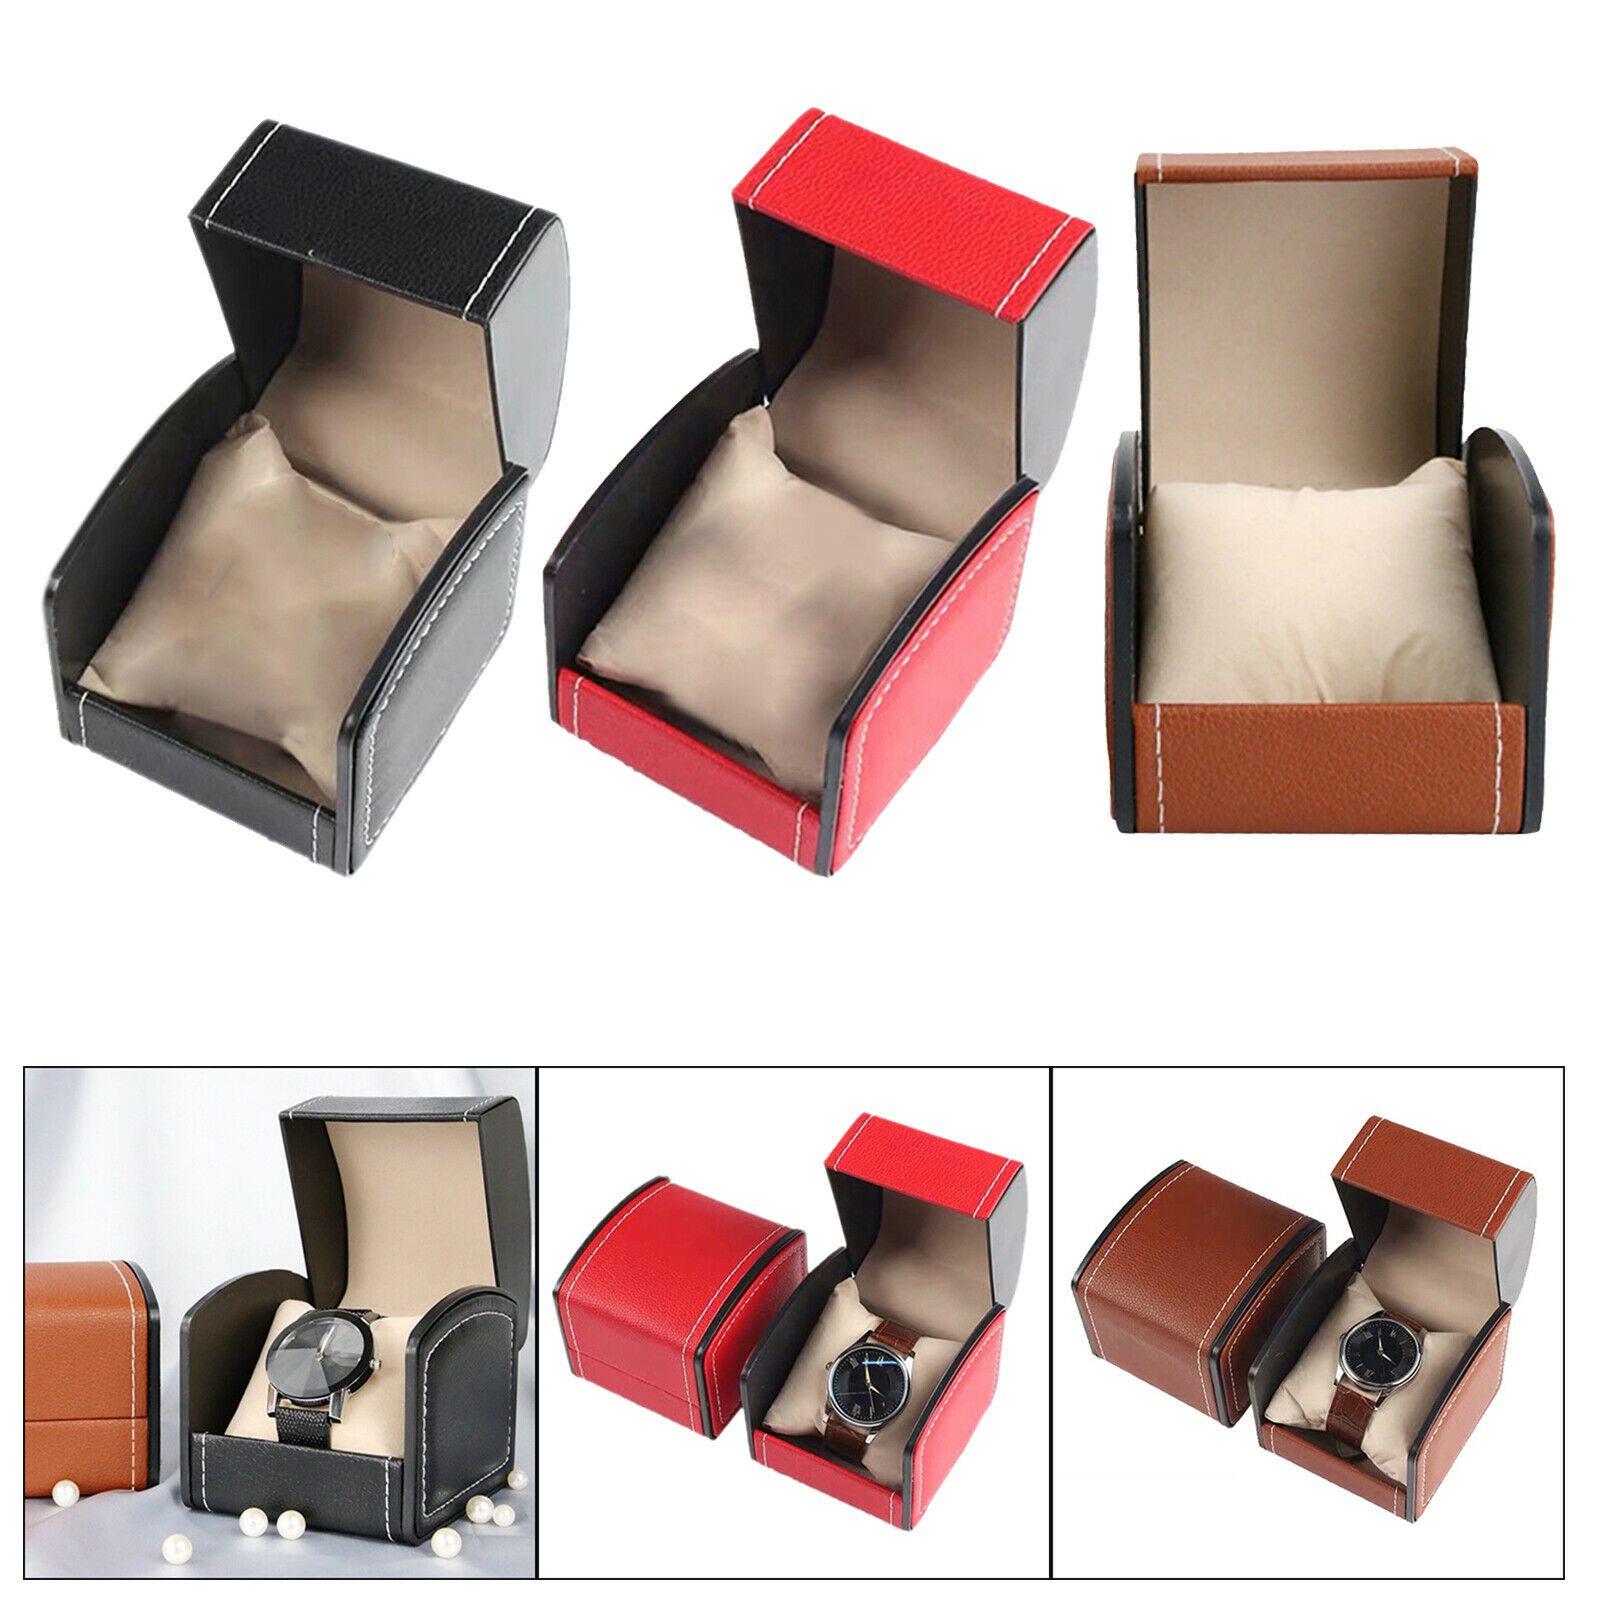 Pu Leather Watch Case Storage Holder Organizer Jewelry Box Sturdy 3.5x4x3in